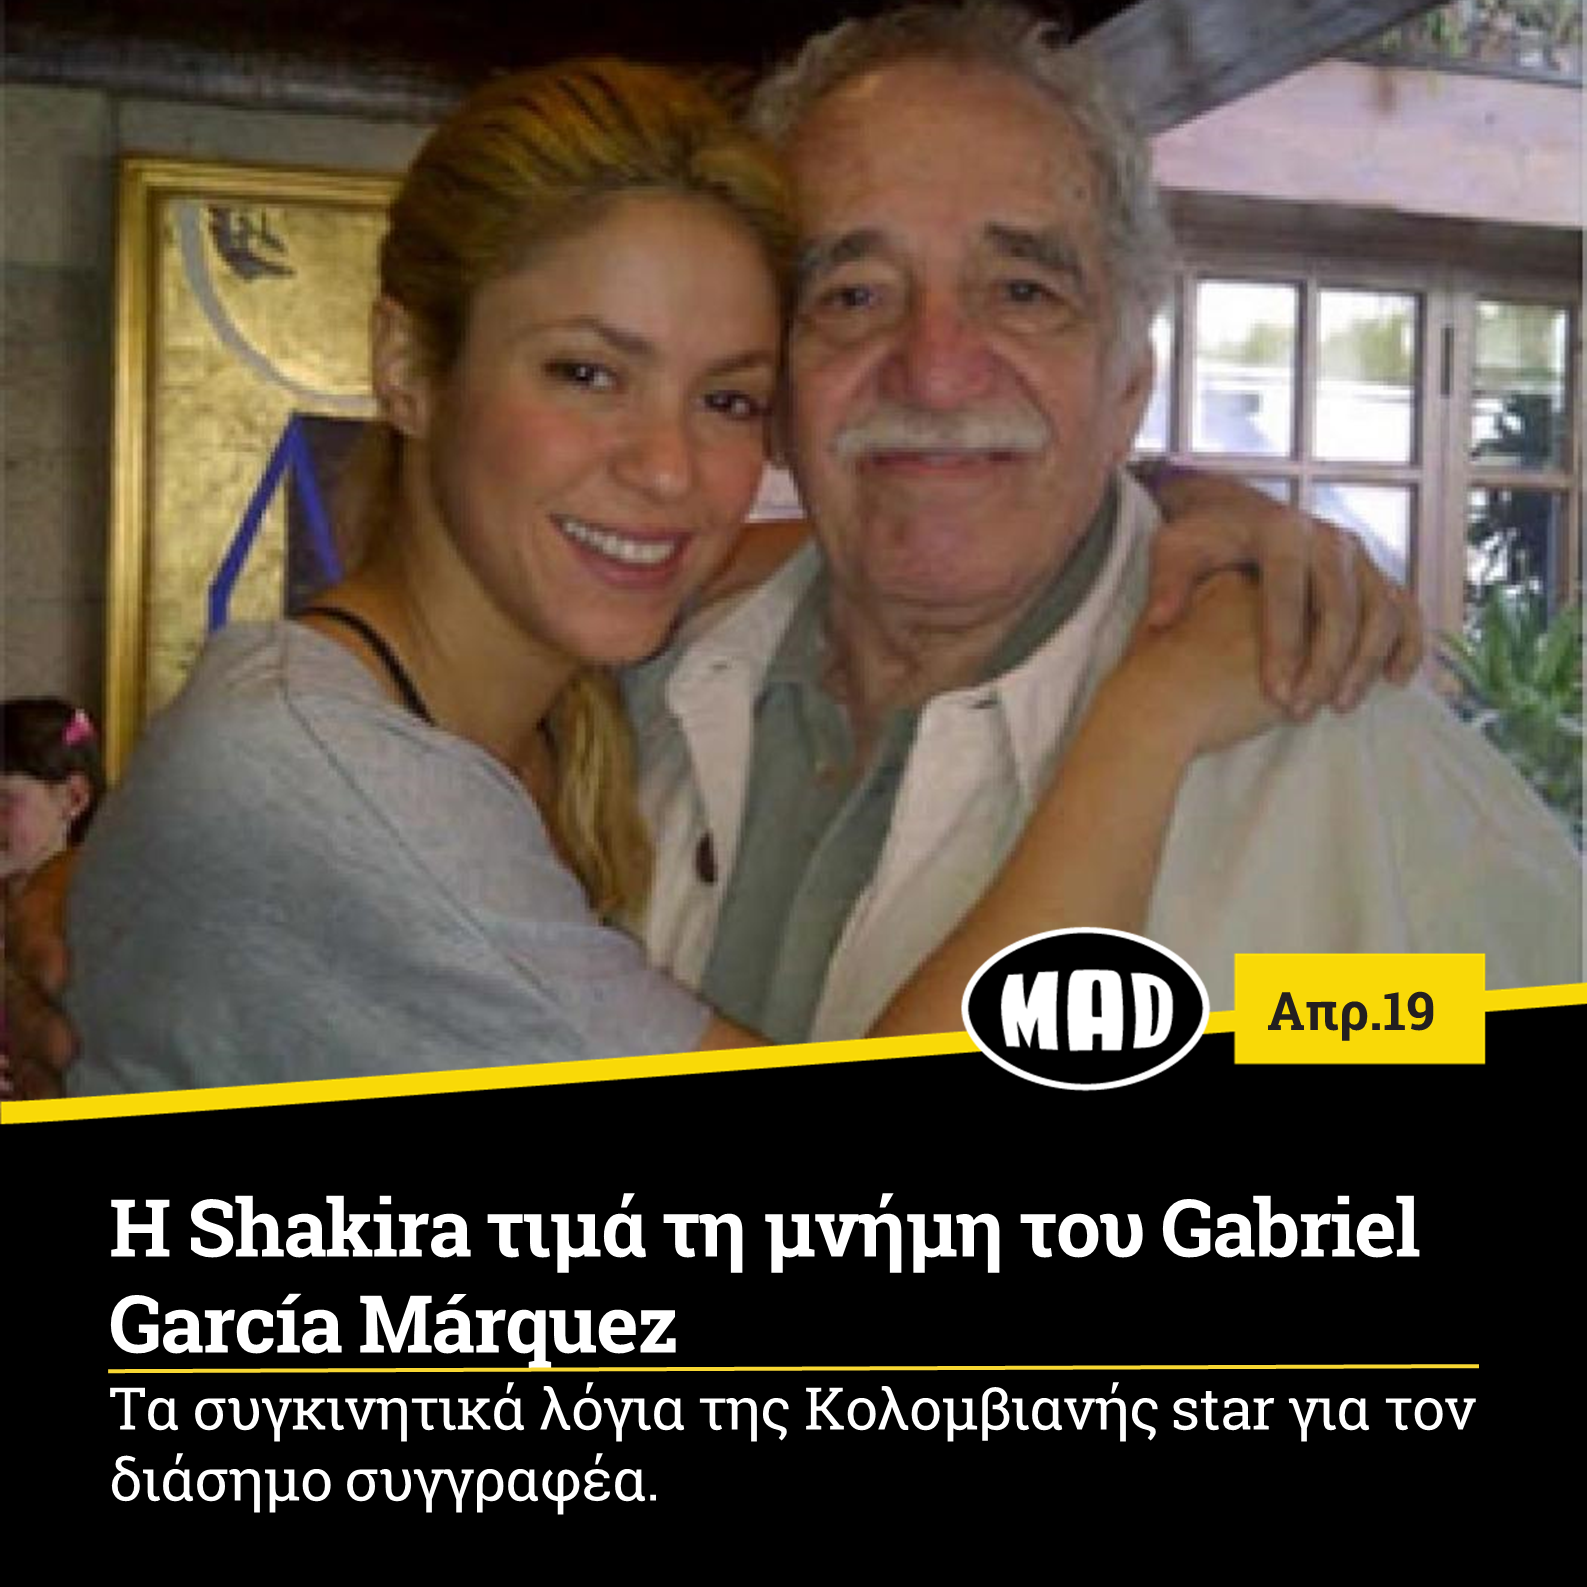 Με έναν πολύ δικό της τρόπο η Shakira θέλησε να τιμήσει τον βραβευμένο με νόμπελ λογοτεχνίας, Gabriel García Márquez, ο οποίος έφυγε από τη ζωή πριν πέντε χρόνια. Η Λατίνα super star και ο διάσημος συγγραφέας κατάγονται από την Κολομβία με την πρώτη να έχει ερμηνεύσει και δύο κομμάτια που έπαιξαν στην ταινία «Έρωτας στα Χρόνια της Χολέρας»(ταινία που βασίστηκε στο ομότιτλο μυθιστόρημα του Márquez. Έτσι λοιπόν η Shakira με ένα video που δημοσίευσε στα social media θέλησε να μοιραστεί κάποια τρυφερά λόγια για τον Márquez, τα οποία και μας άγγιξαν υπενθυμίζοντάς μας πόσο σημαντική προσωπικότητα υπήρξε. Συγκεκριμένα η Shakira διευκρίνισε ότι οι δυο τους γνωρίστηκαν, όταν εκείνη ήταν 21 χρονών και ότι θα θυμάται για πάντα «την αίσθηση του χιούμορ του, τη ζεστασιά και για το πόσο ανθρώπινος ήταν». Το video τελειώνει με την Shakira να δανείζεται κάποιο από τα γνωμικά του ίδιου του συγγραφέα : «Είναι εύκολο να θυμούνται εκείνοι που έχουν μνήμη, είναι δύσκολο να ξεχνούν όσοι έχουν καρδιά»